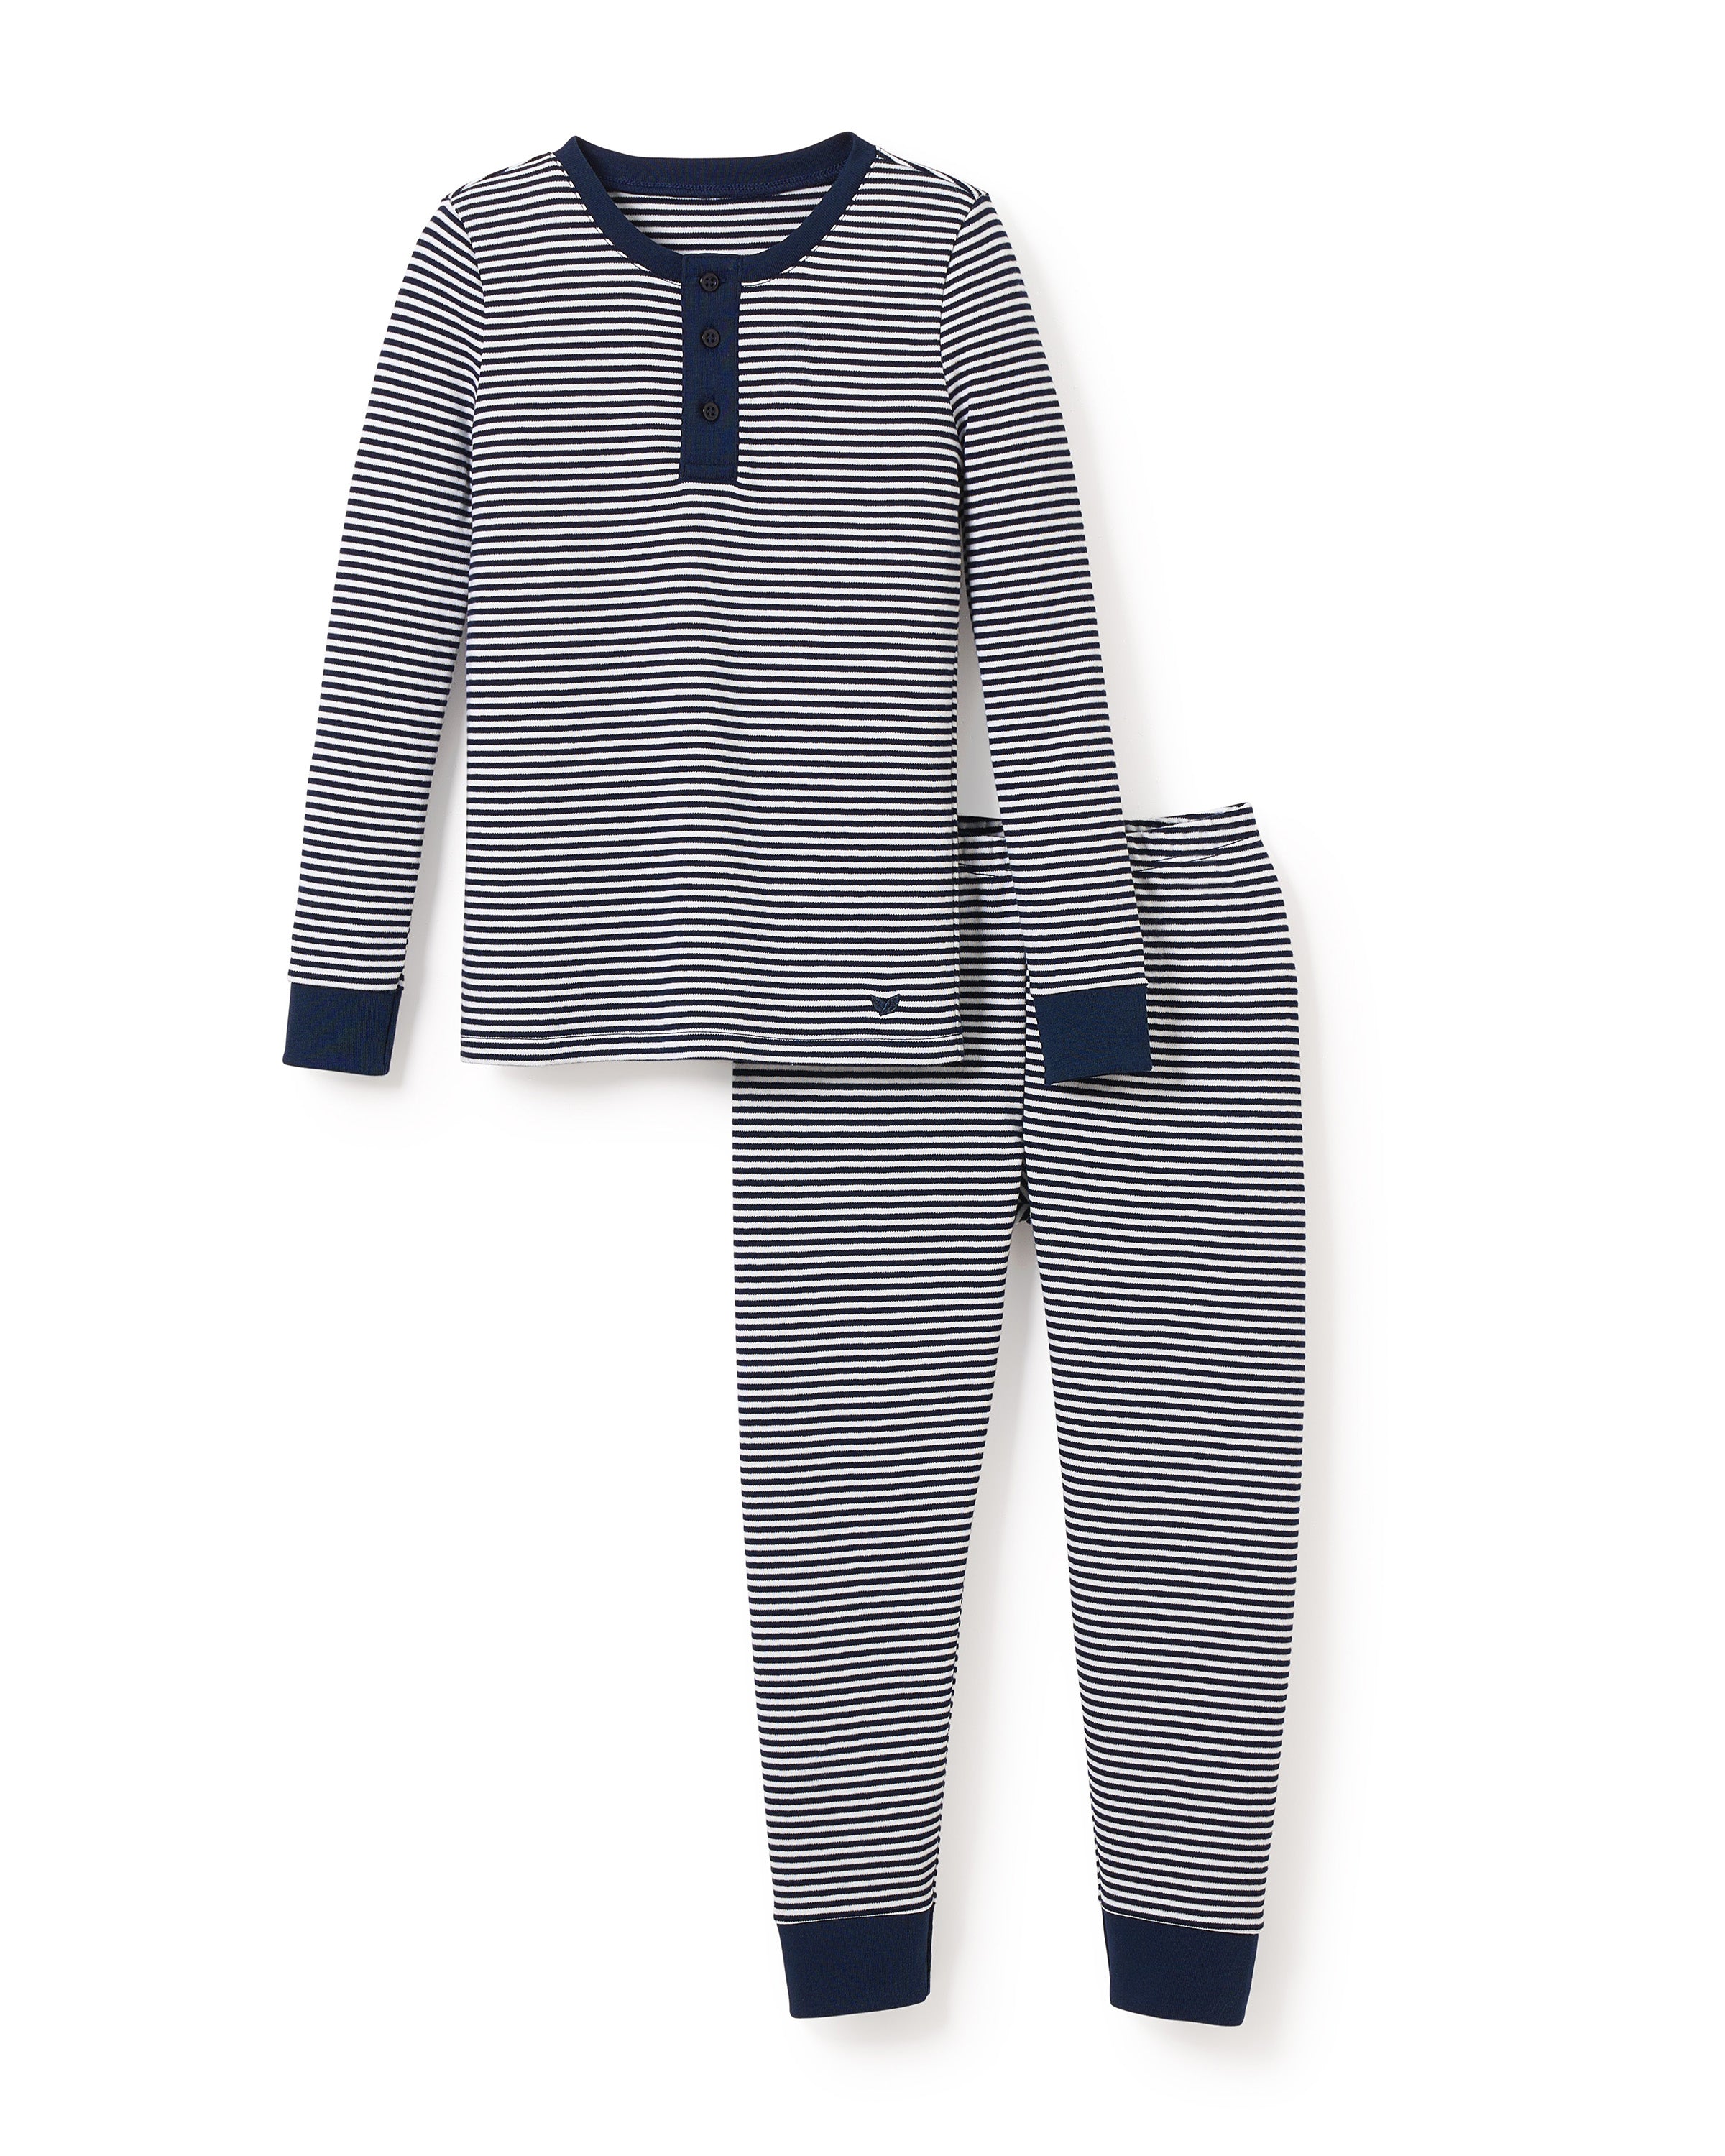 Kid's Pima Snug Fit Pajama Set in Navy Stripe